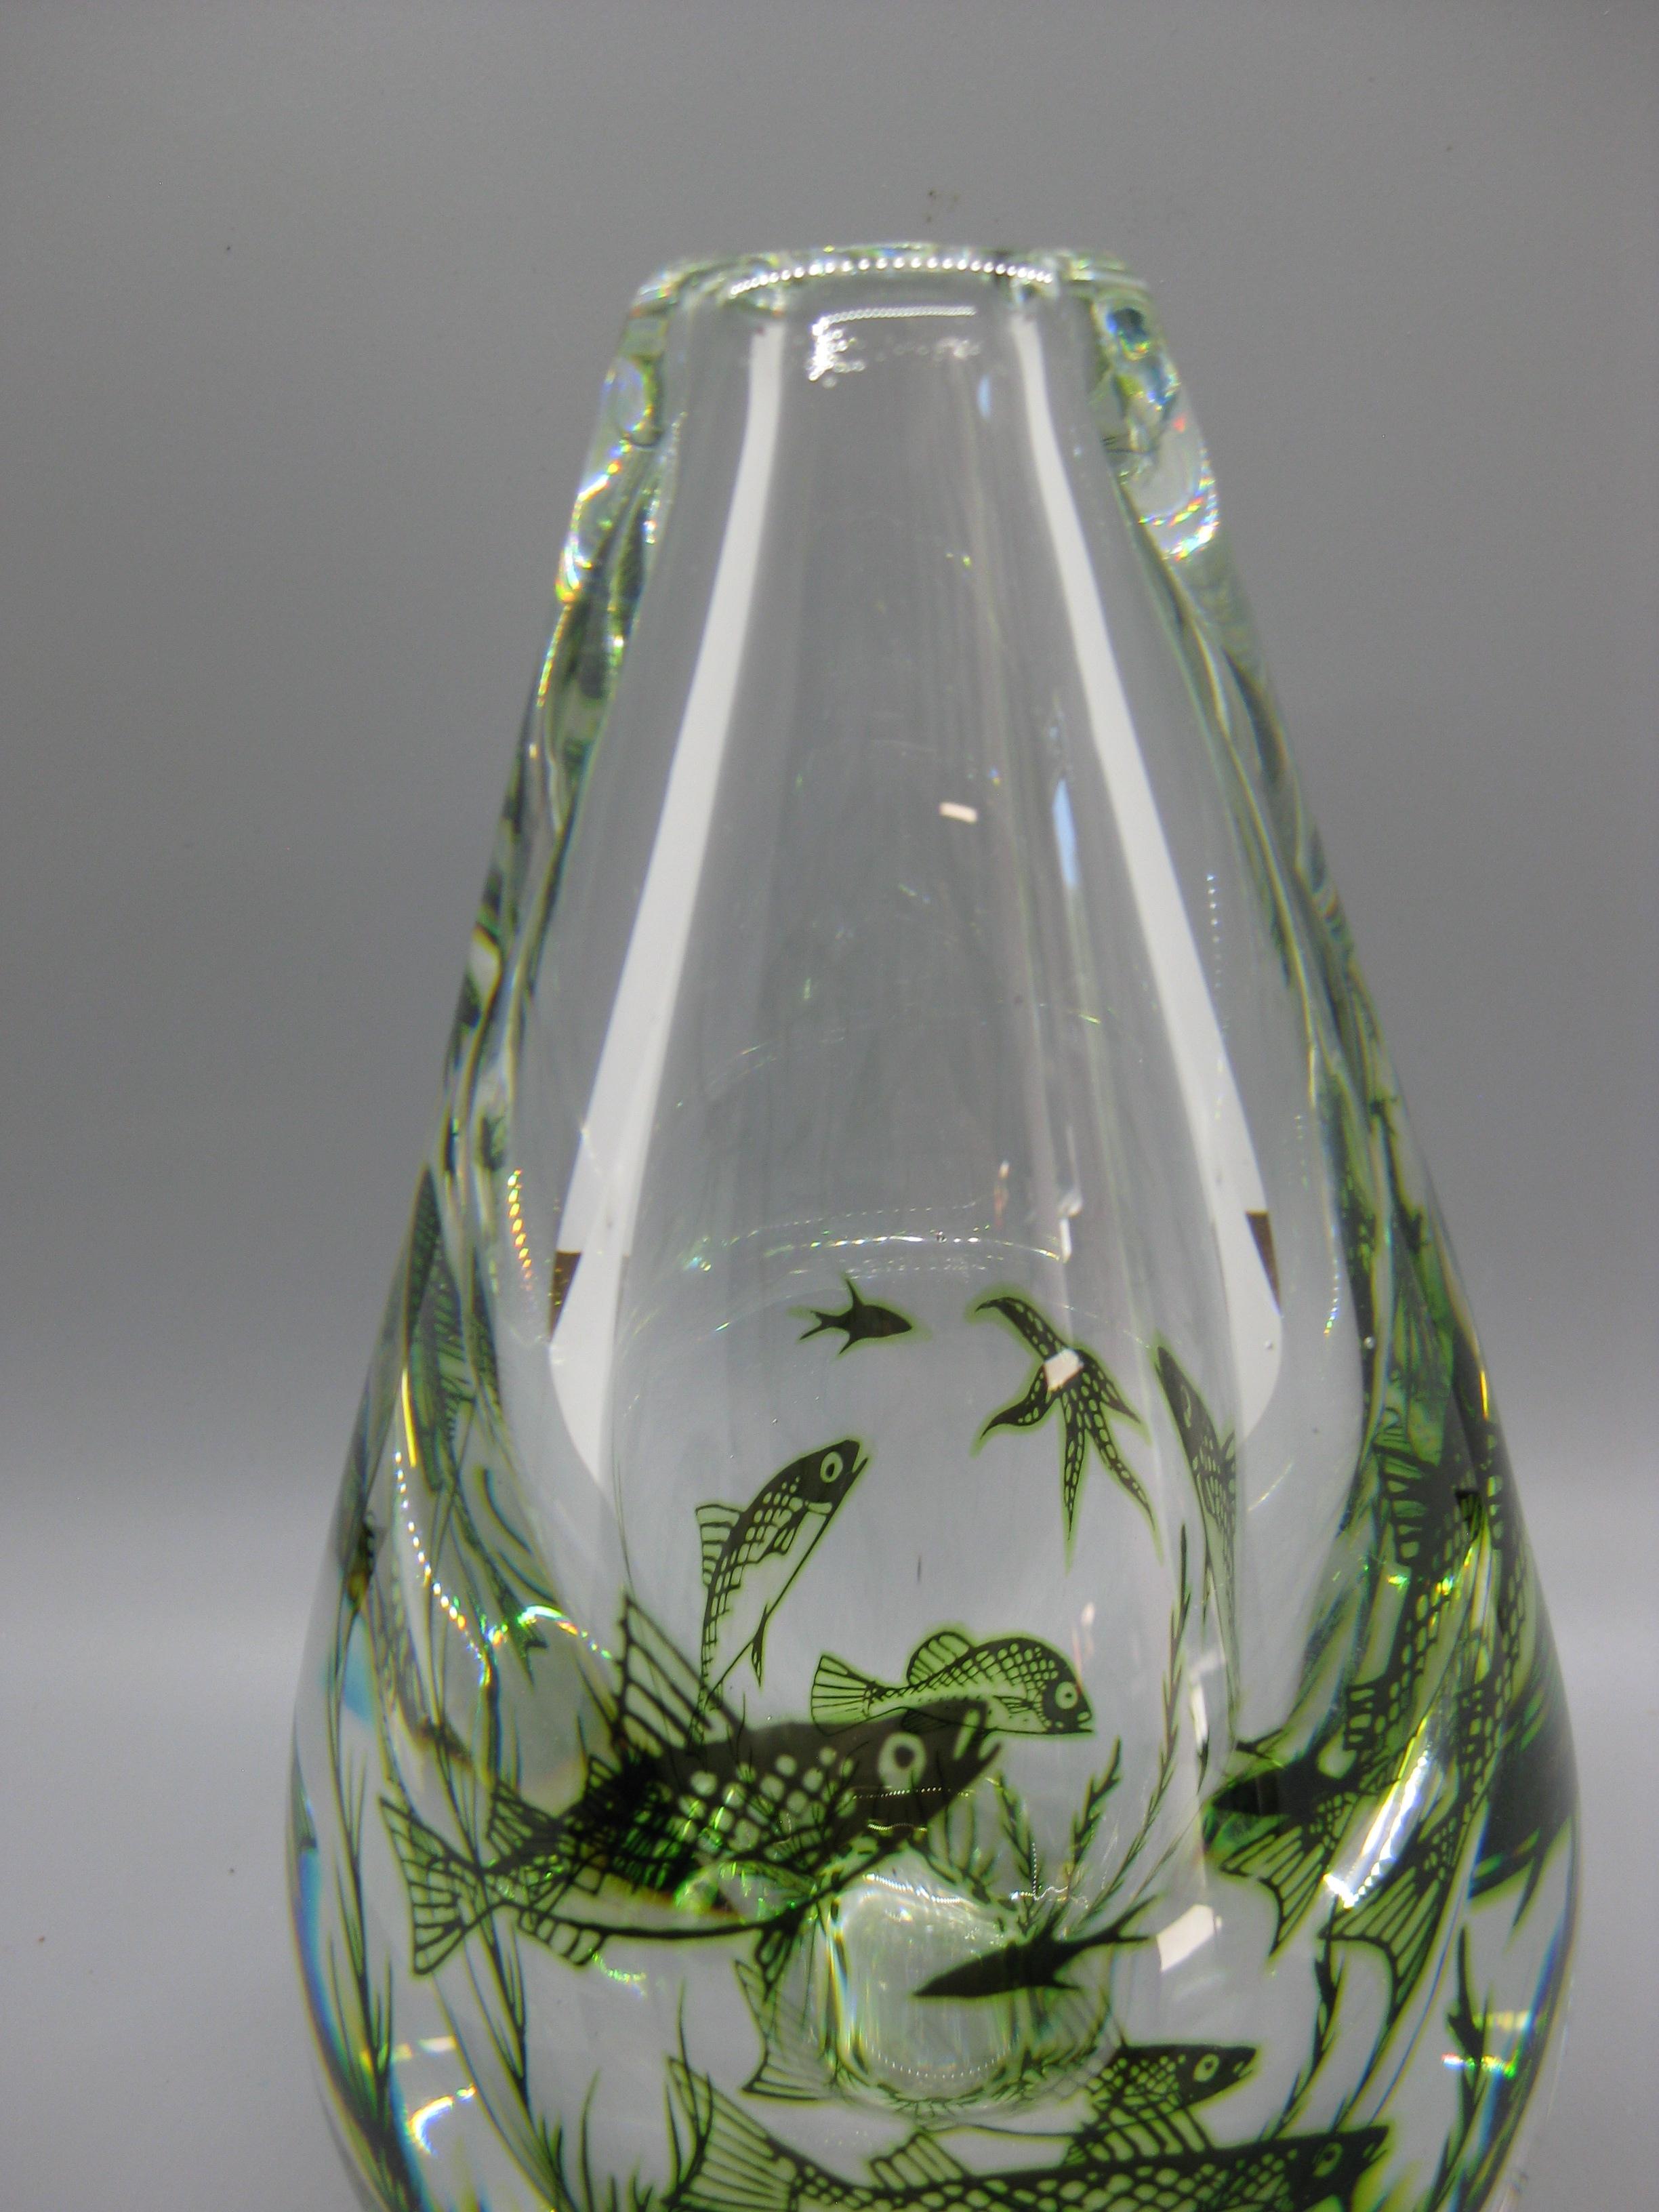 Magnifique vase en verre d'art Grall fish Edward Hald pour Orrefors et datant des années 1940 au début des années 1950. Superbe conception et forme. Signé en bas par l'artiste. En très bon état pour son âge. Il y a un petit défaut de surface comme